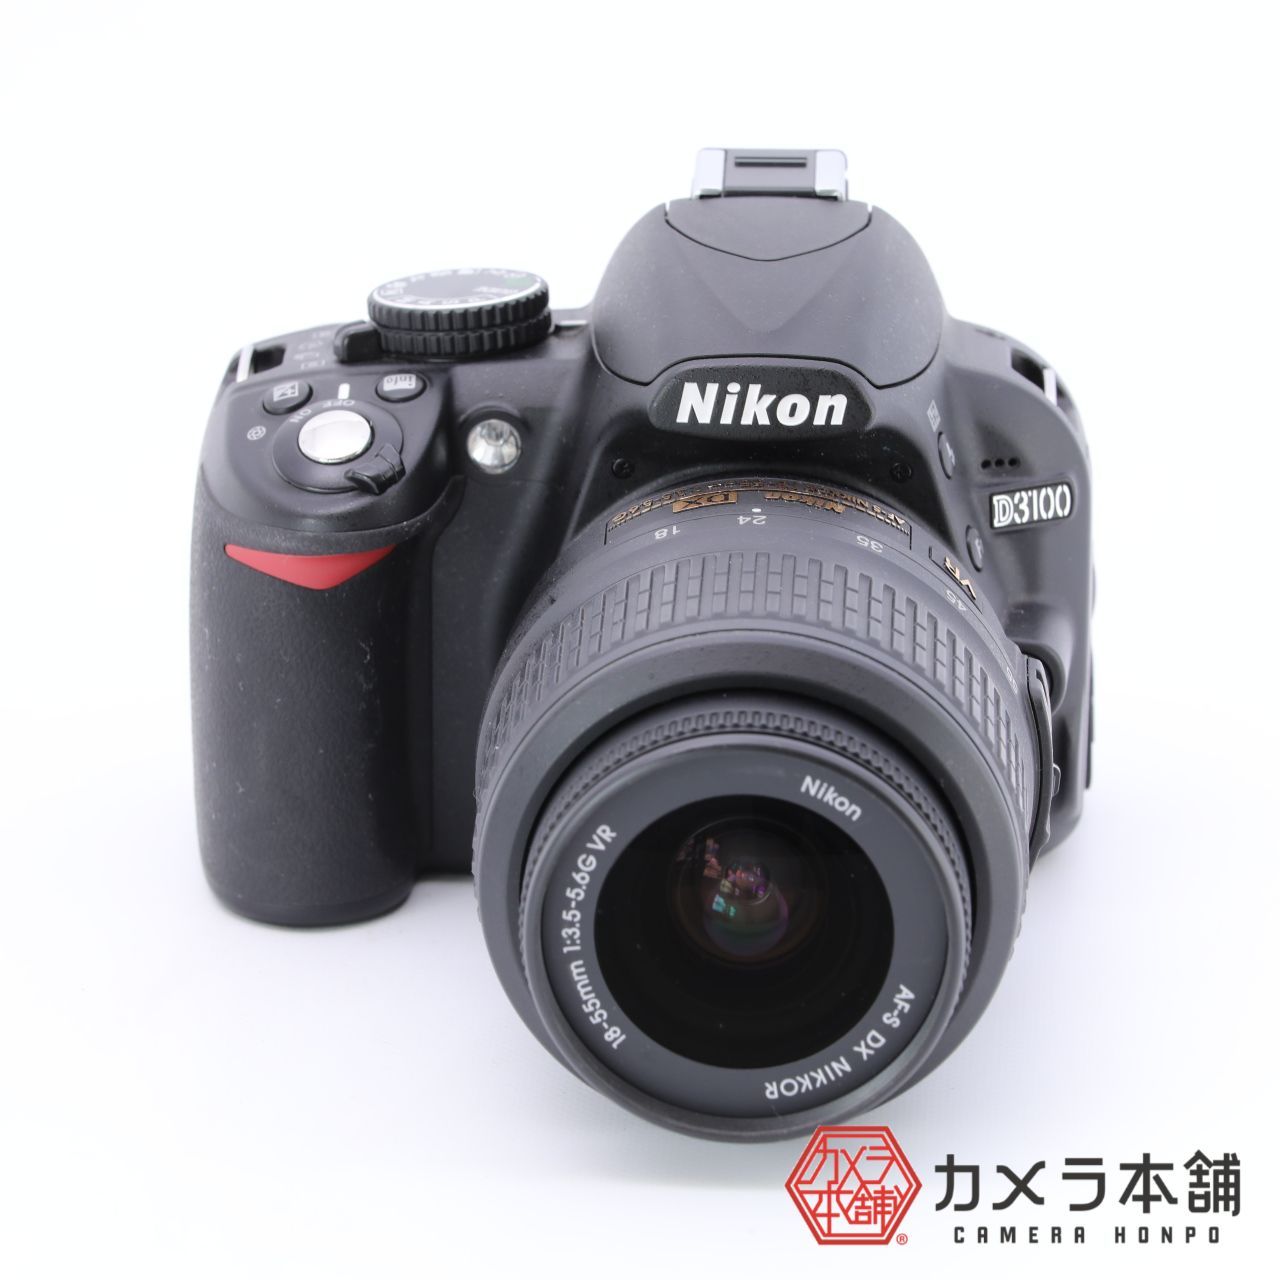 Nikon ニコン デジタル一眼レフ D3100 レンズキット D3100LK カメラ本舗｜Camera honpo メルカリ